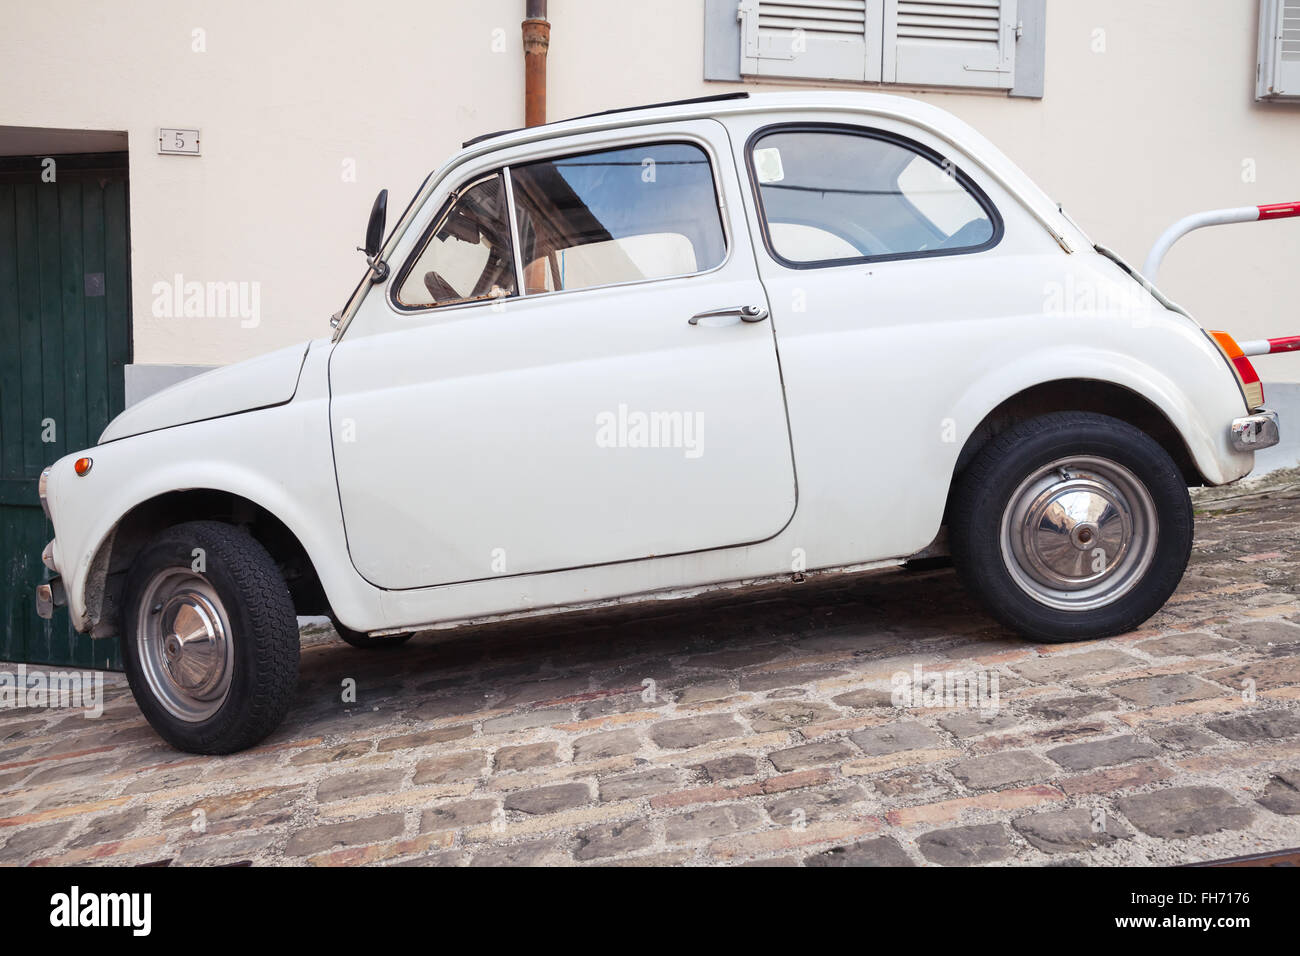 Fermo, Italia - 11 de febrero de 2016: blanco antiguo fiat 500 L del coche de la ciudad en la calle de la ciudad italiana, vista lateral Foto de stock